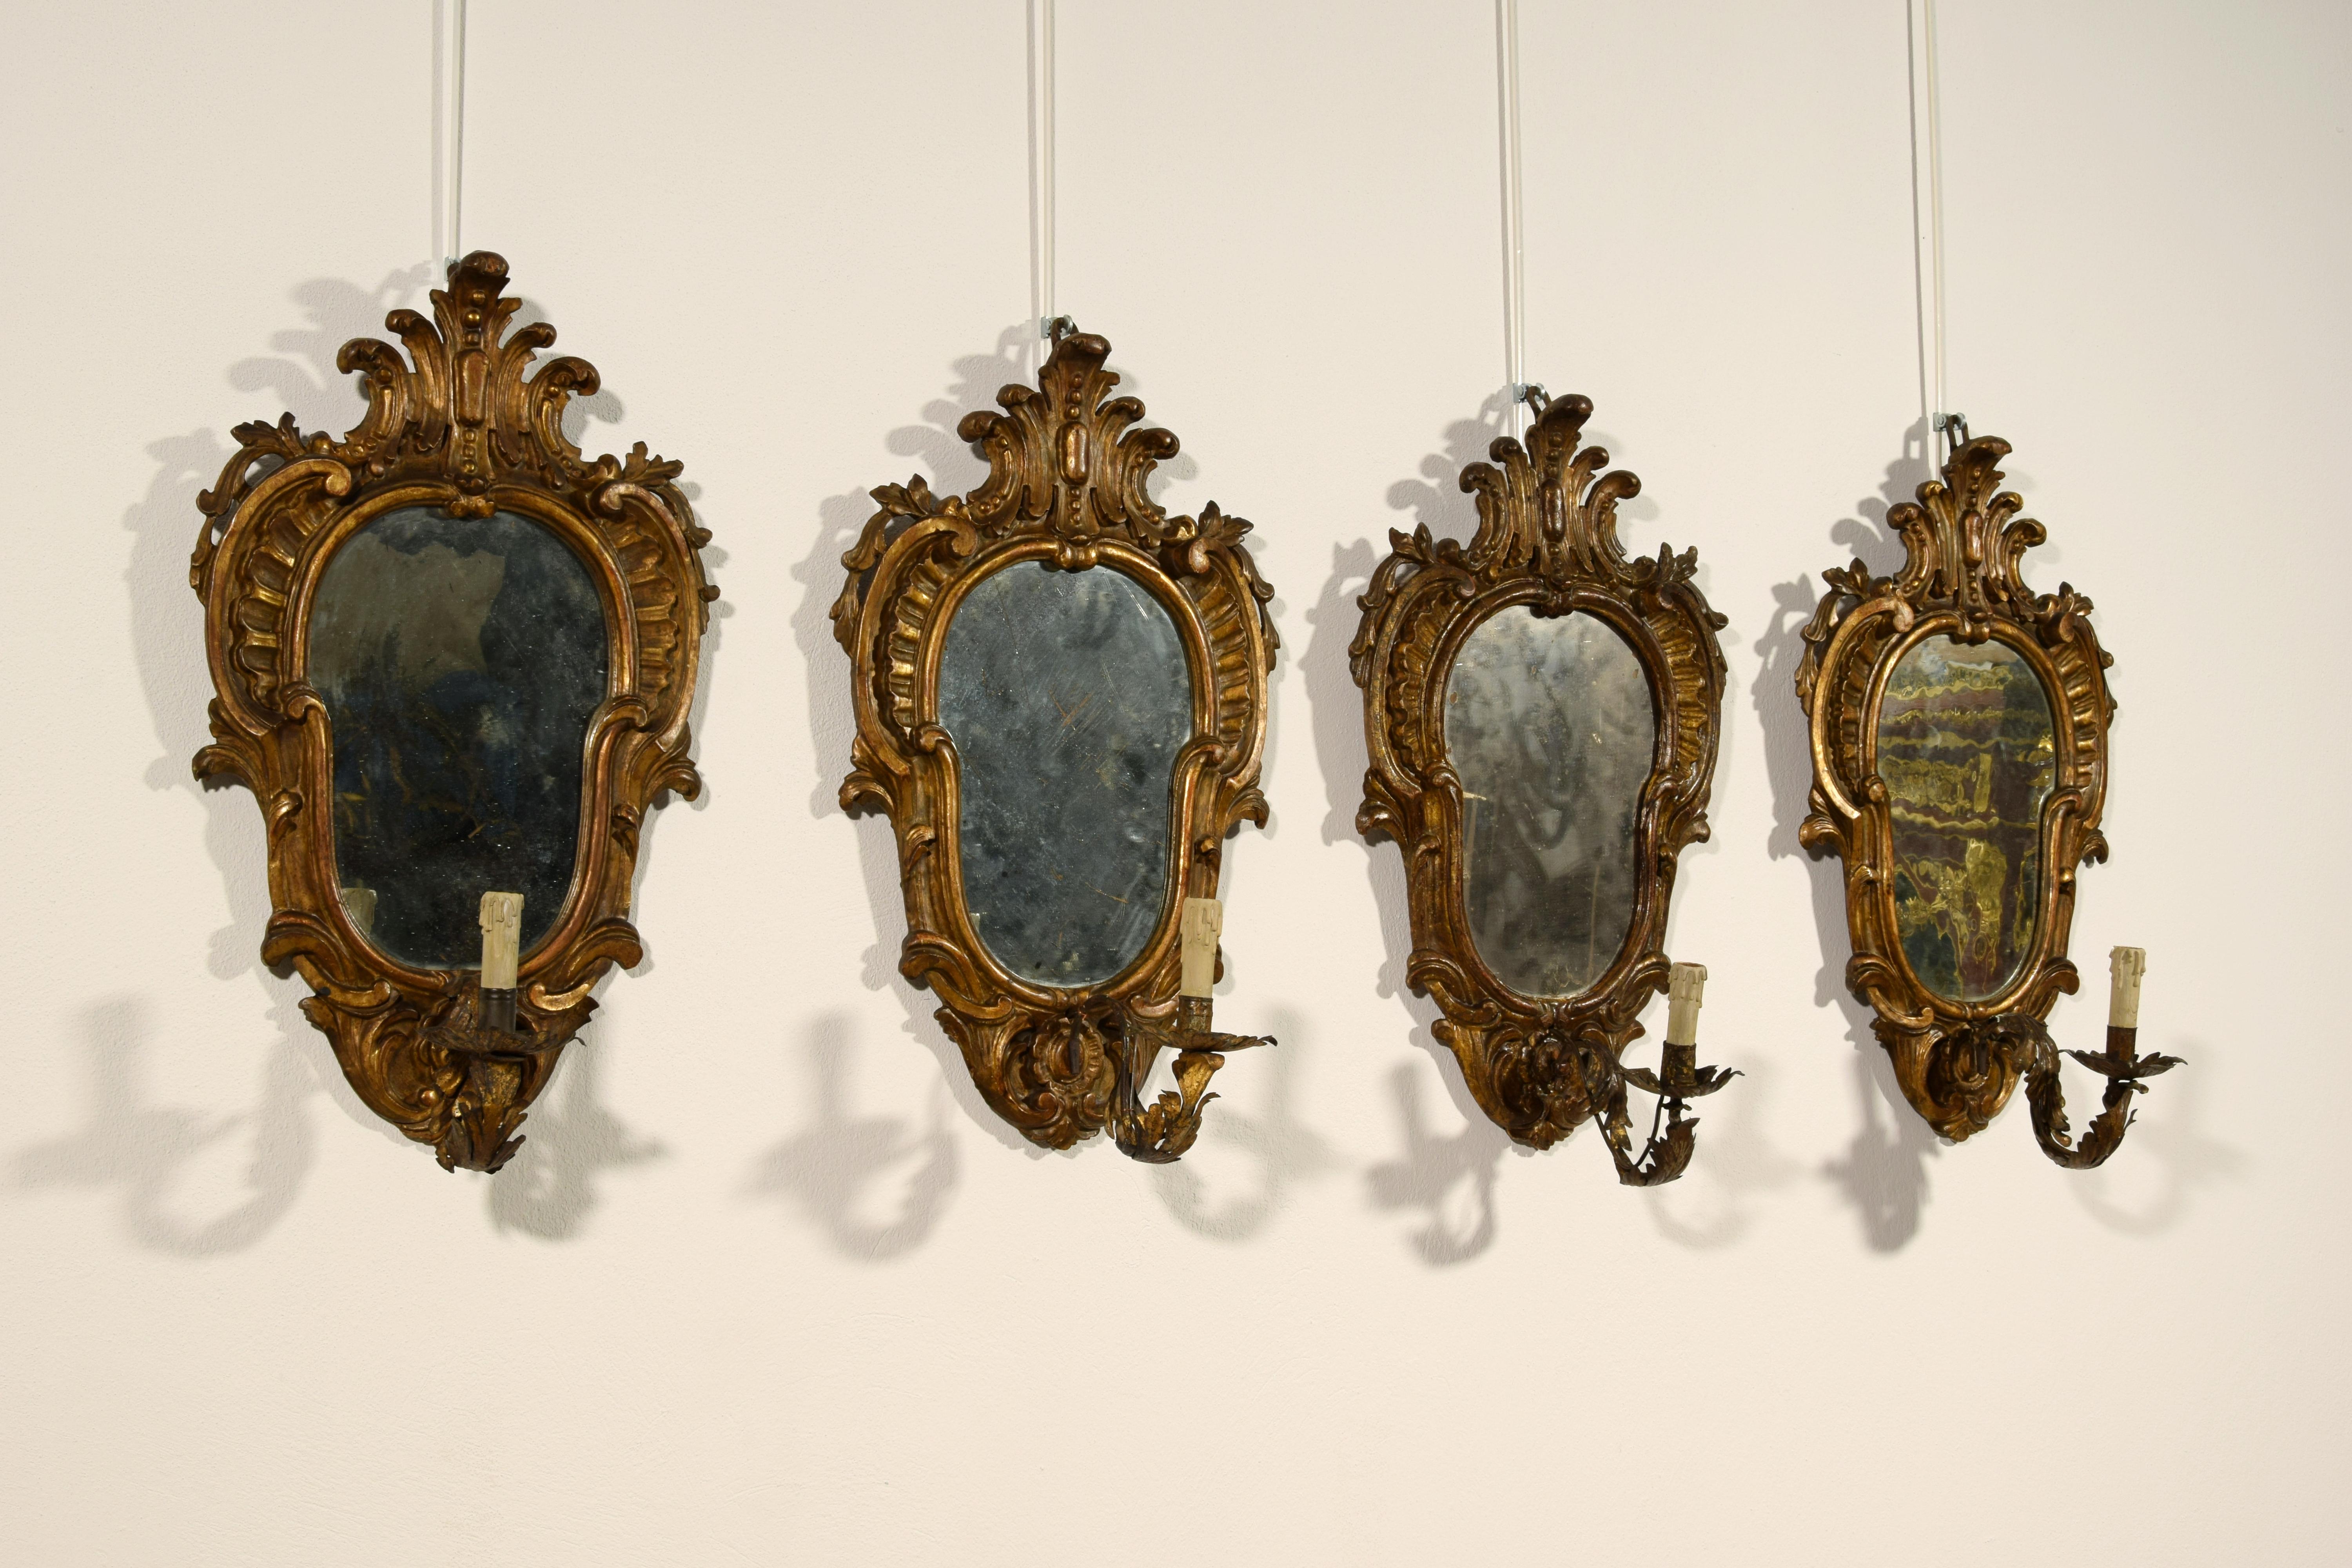 19. Jahrhundert, Vier italienische geschnitzte vergoldete Wandleuchter im Louis-XV-Stil
Maße: cm H 60 x B 37 x T 22 maximal (nur Spiegel D 6 cm)
Die vier reizvollen Wandleuchter mit Spiegel und Lampenfassung, die im 19. Jahrhundert im